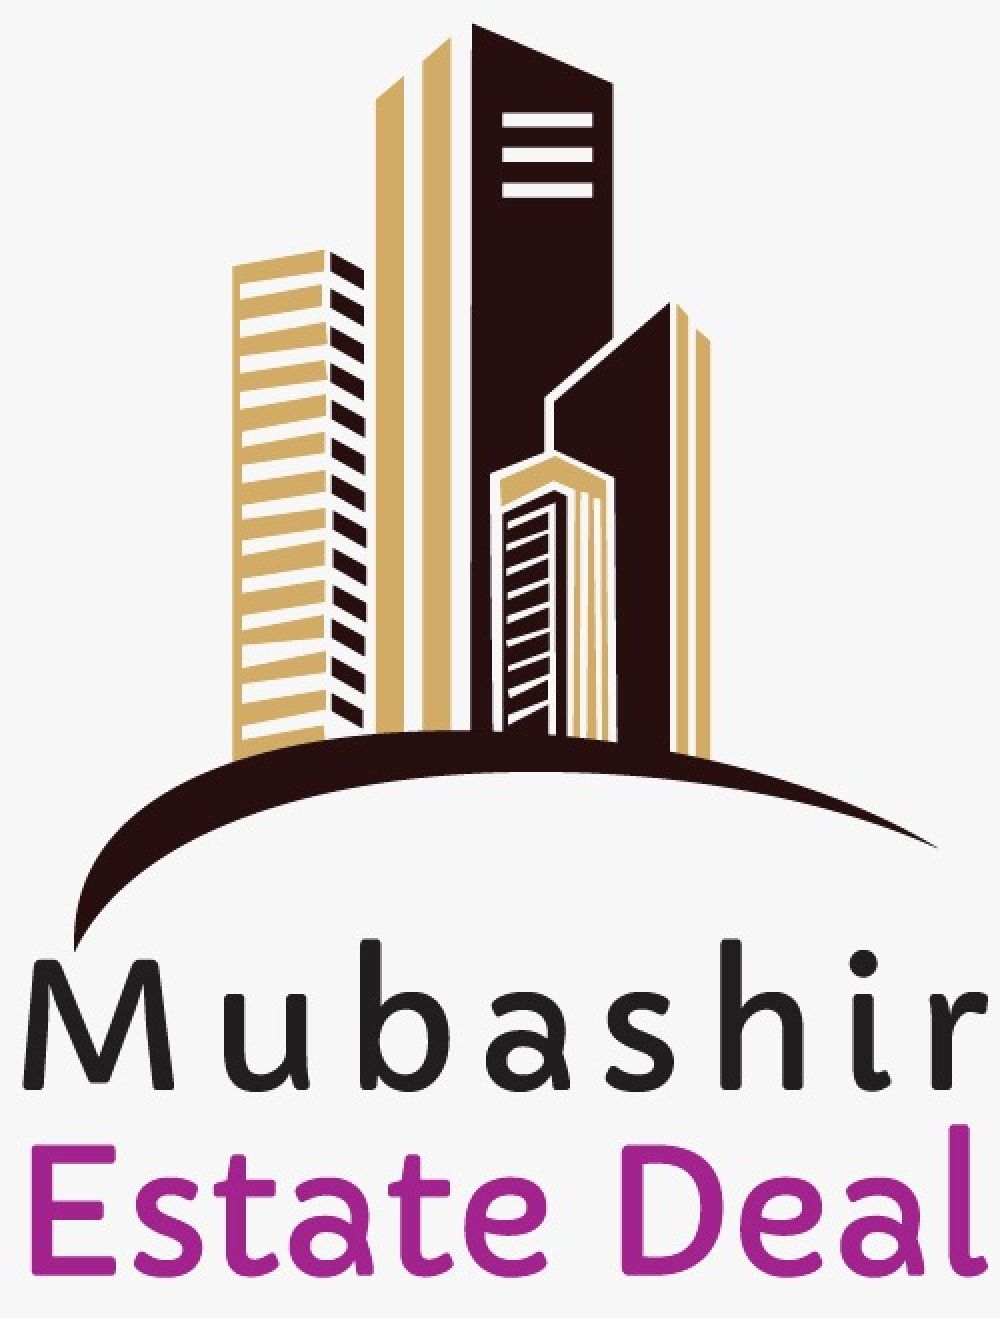 Logo Realestate Agency Mubashir Estate Deal